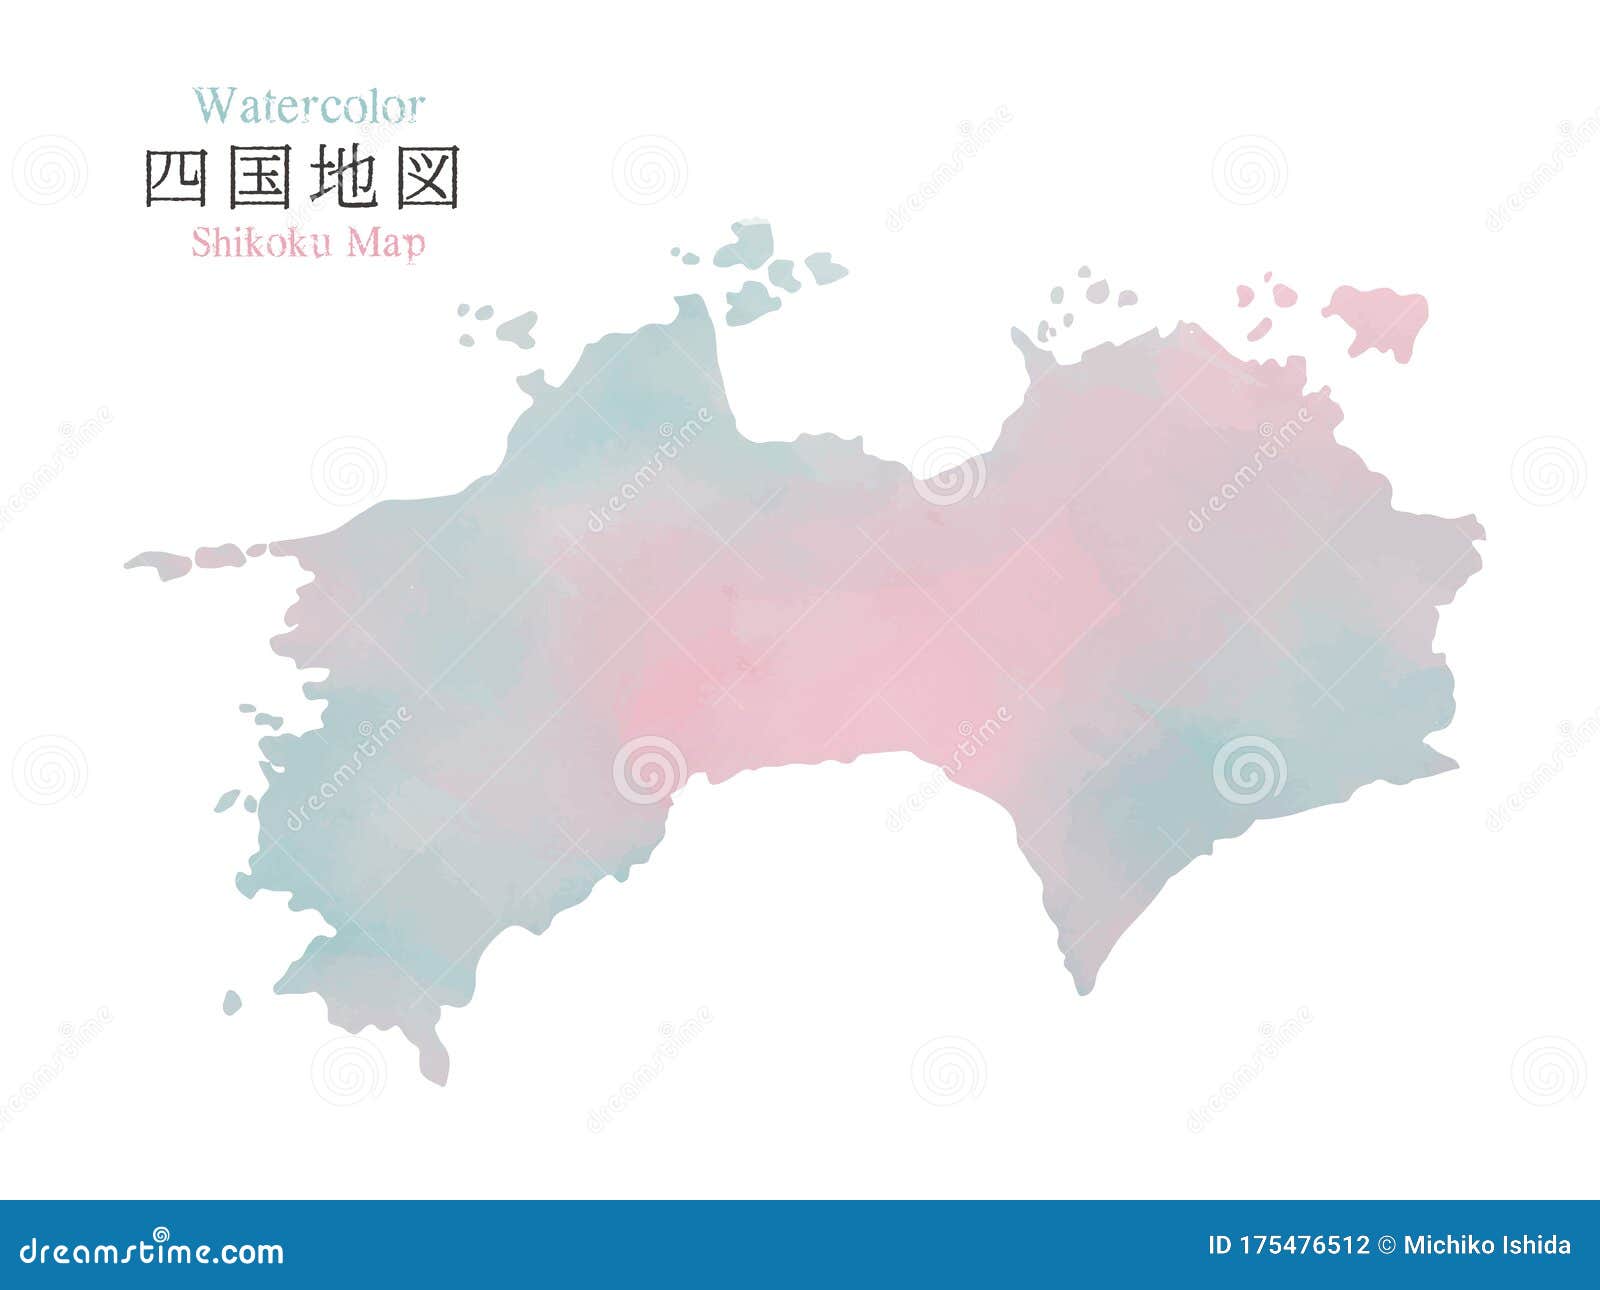 水色纹理的日本四国地区地图向量例证 插画包括有水色纹理的日本四国地区地图